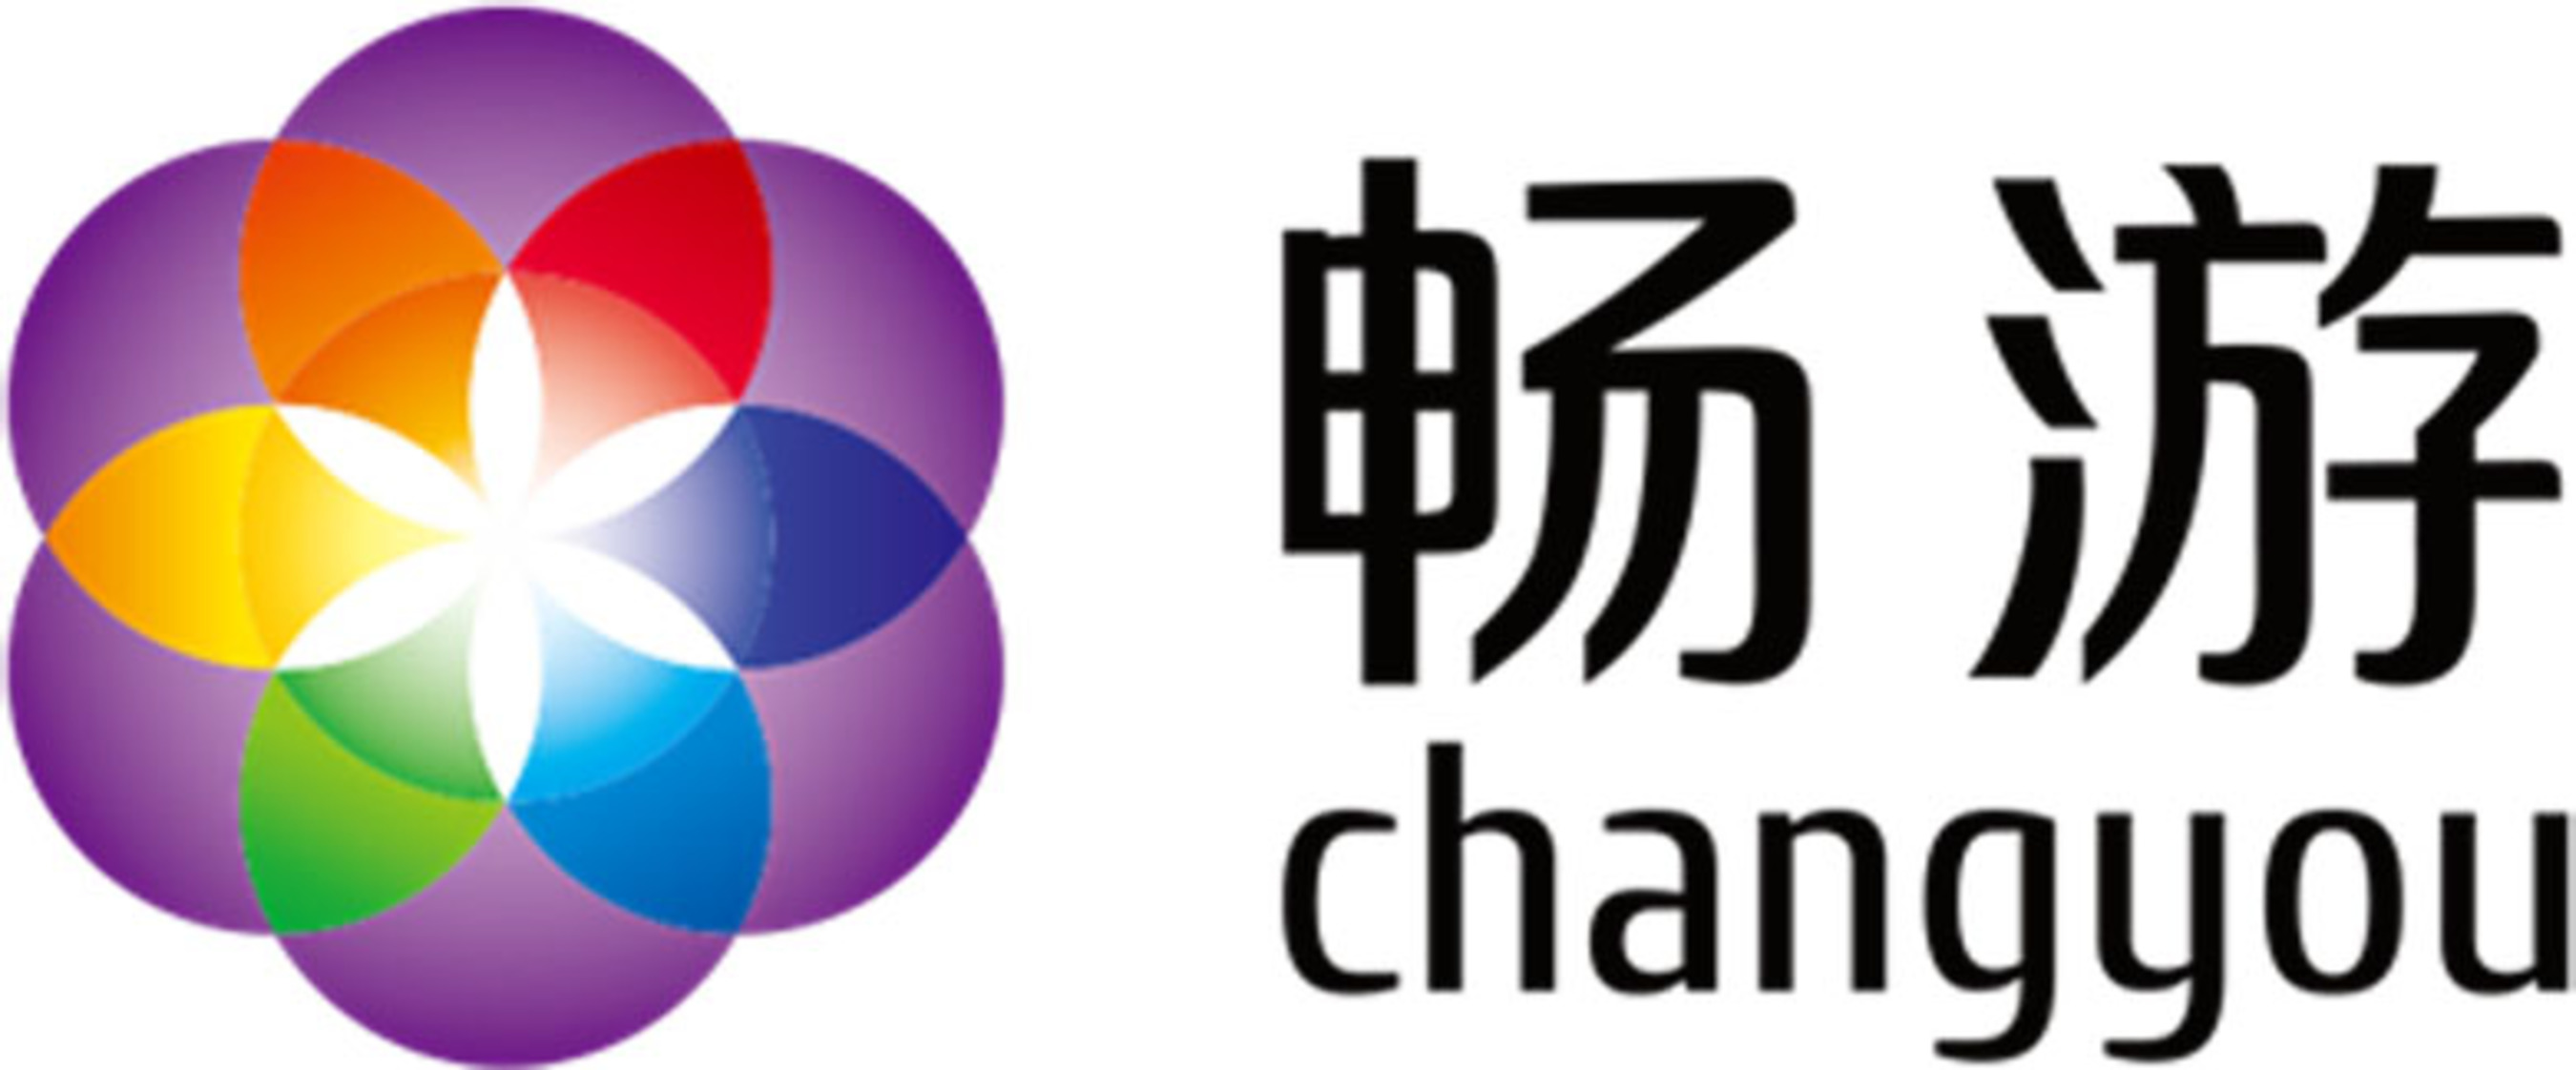 Changyou.com Logo. (PRNewsFoto/Changyou.com Limited) (PRNewsFoto/)